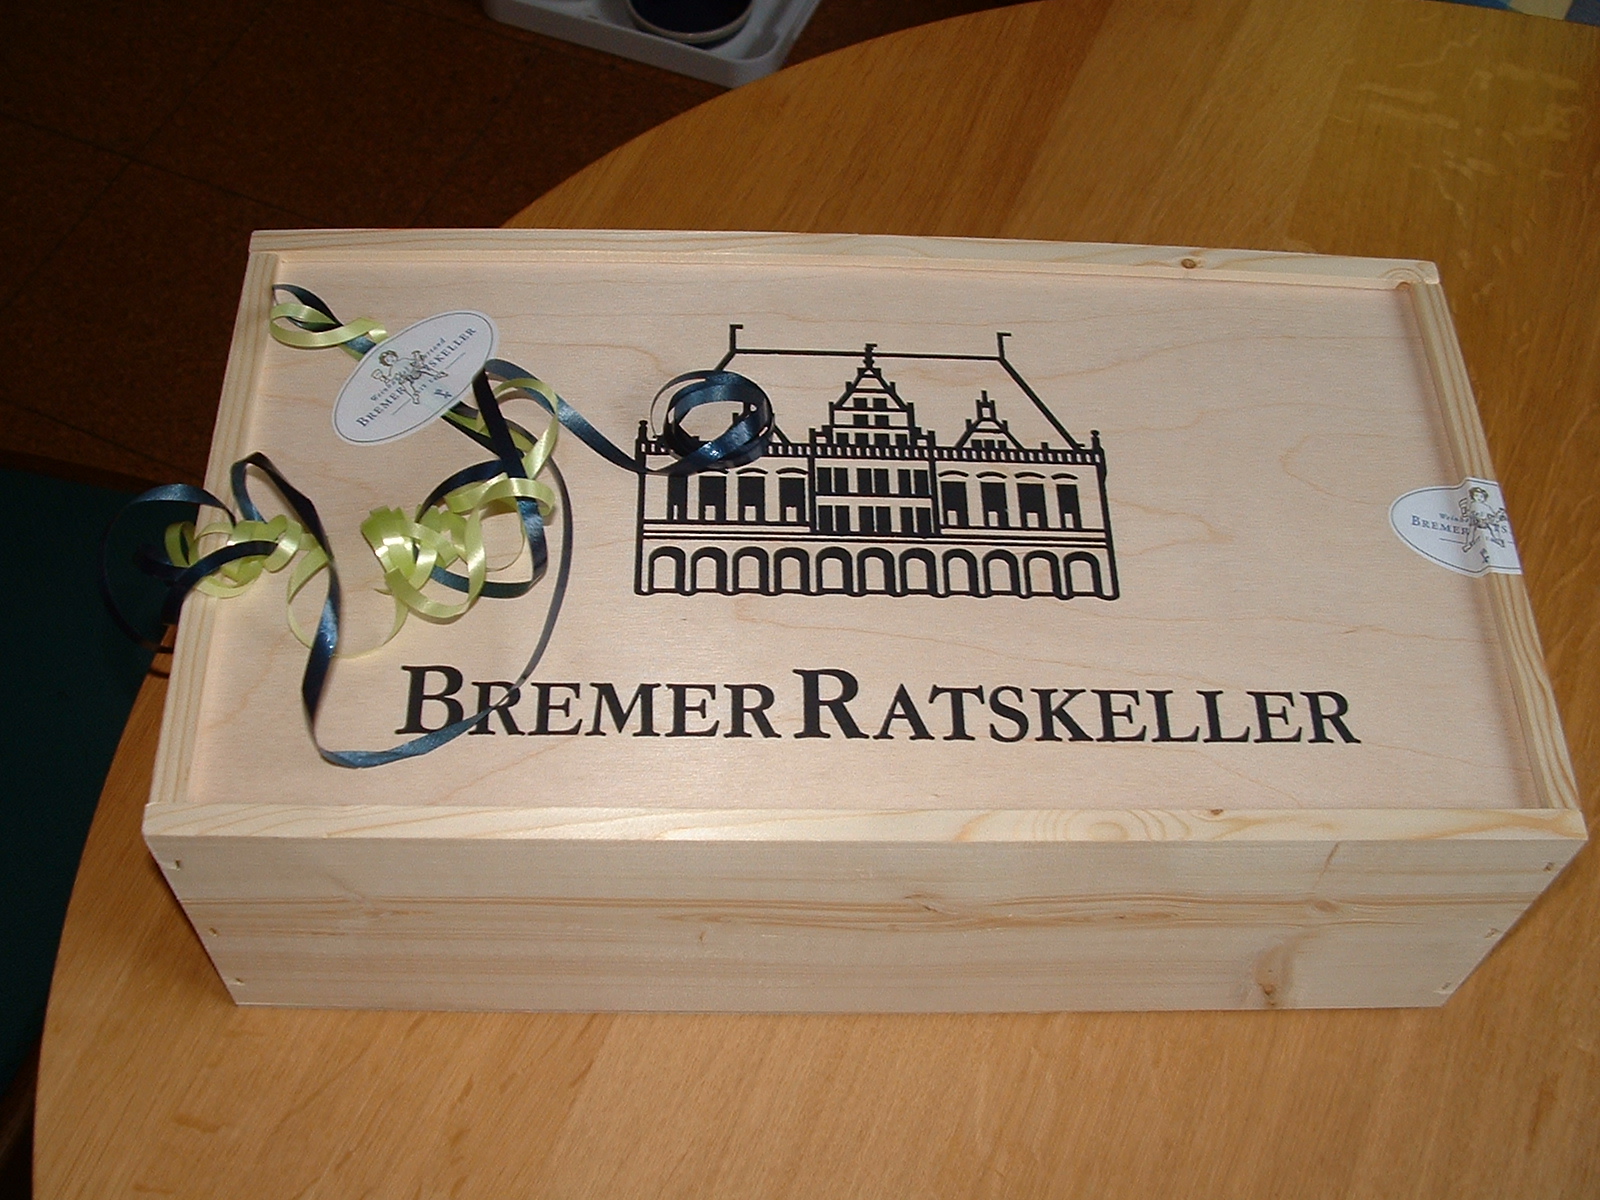 Bremer Ratskeller Weinhandel und Versand in Bremen

Schmuckkiste